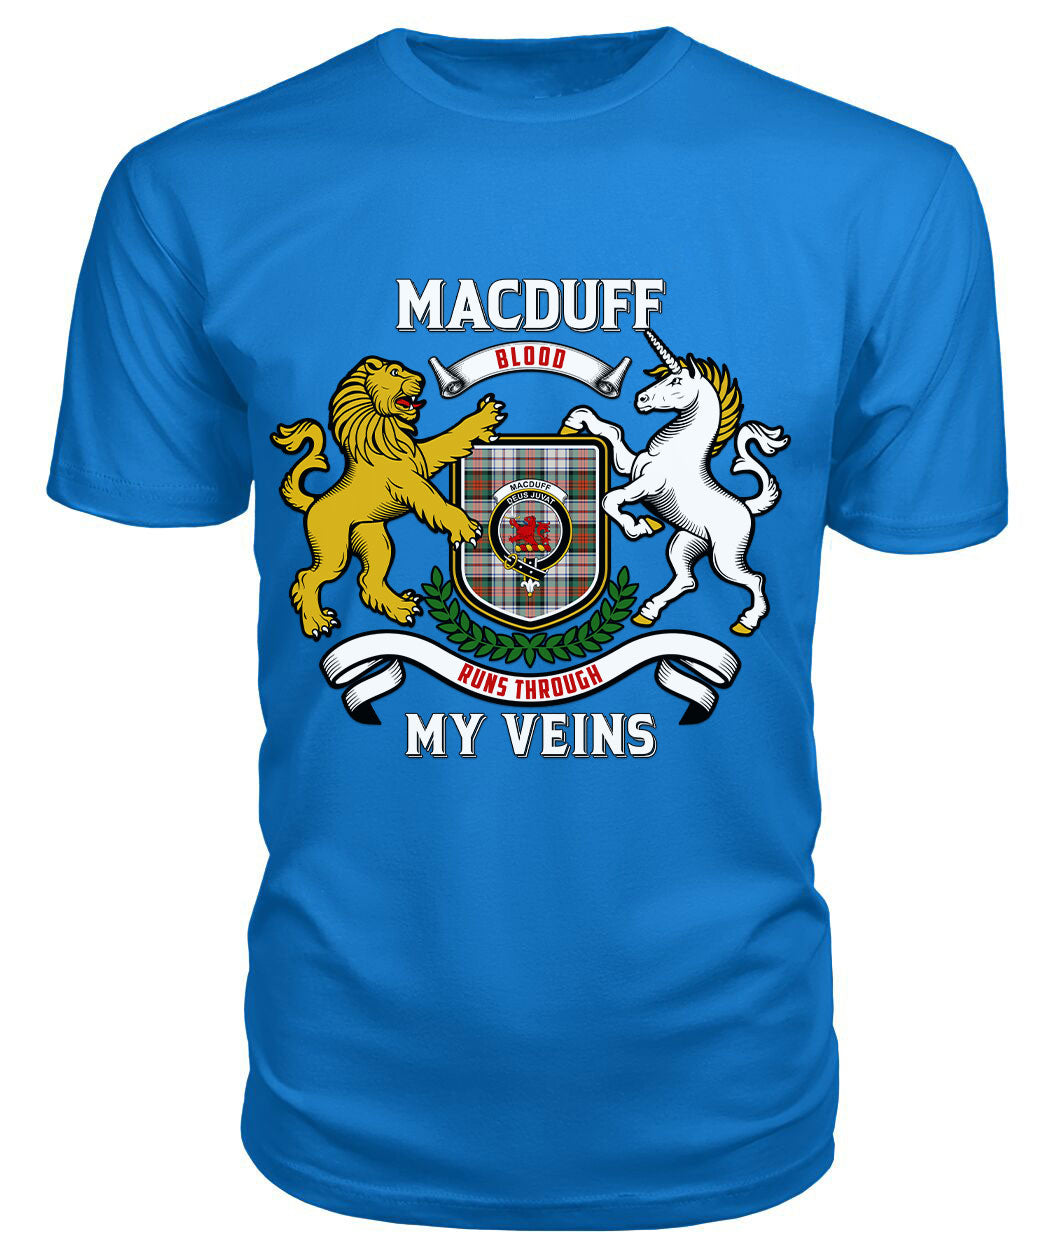 MacDuff Dress Ancient Tartan Crest 2D T-shirt - Blood Runs Through My Veins Style